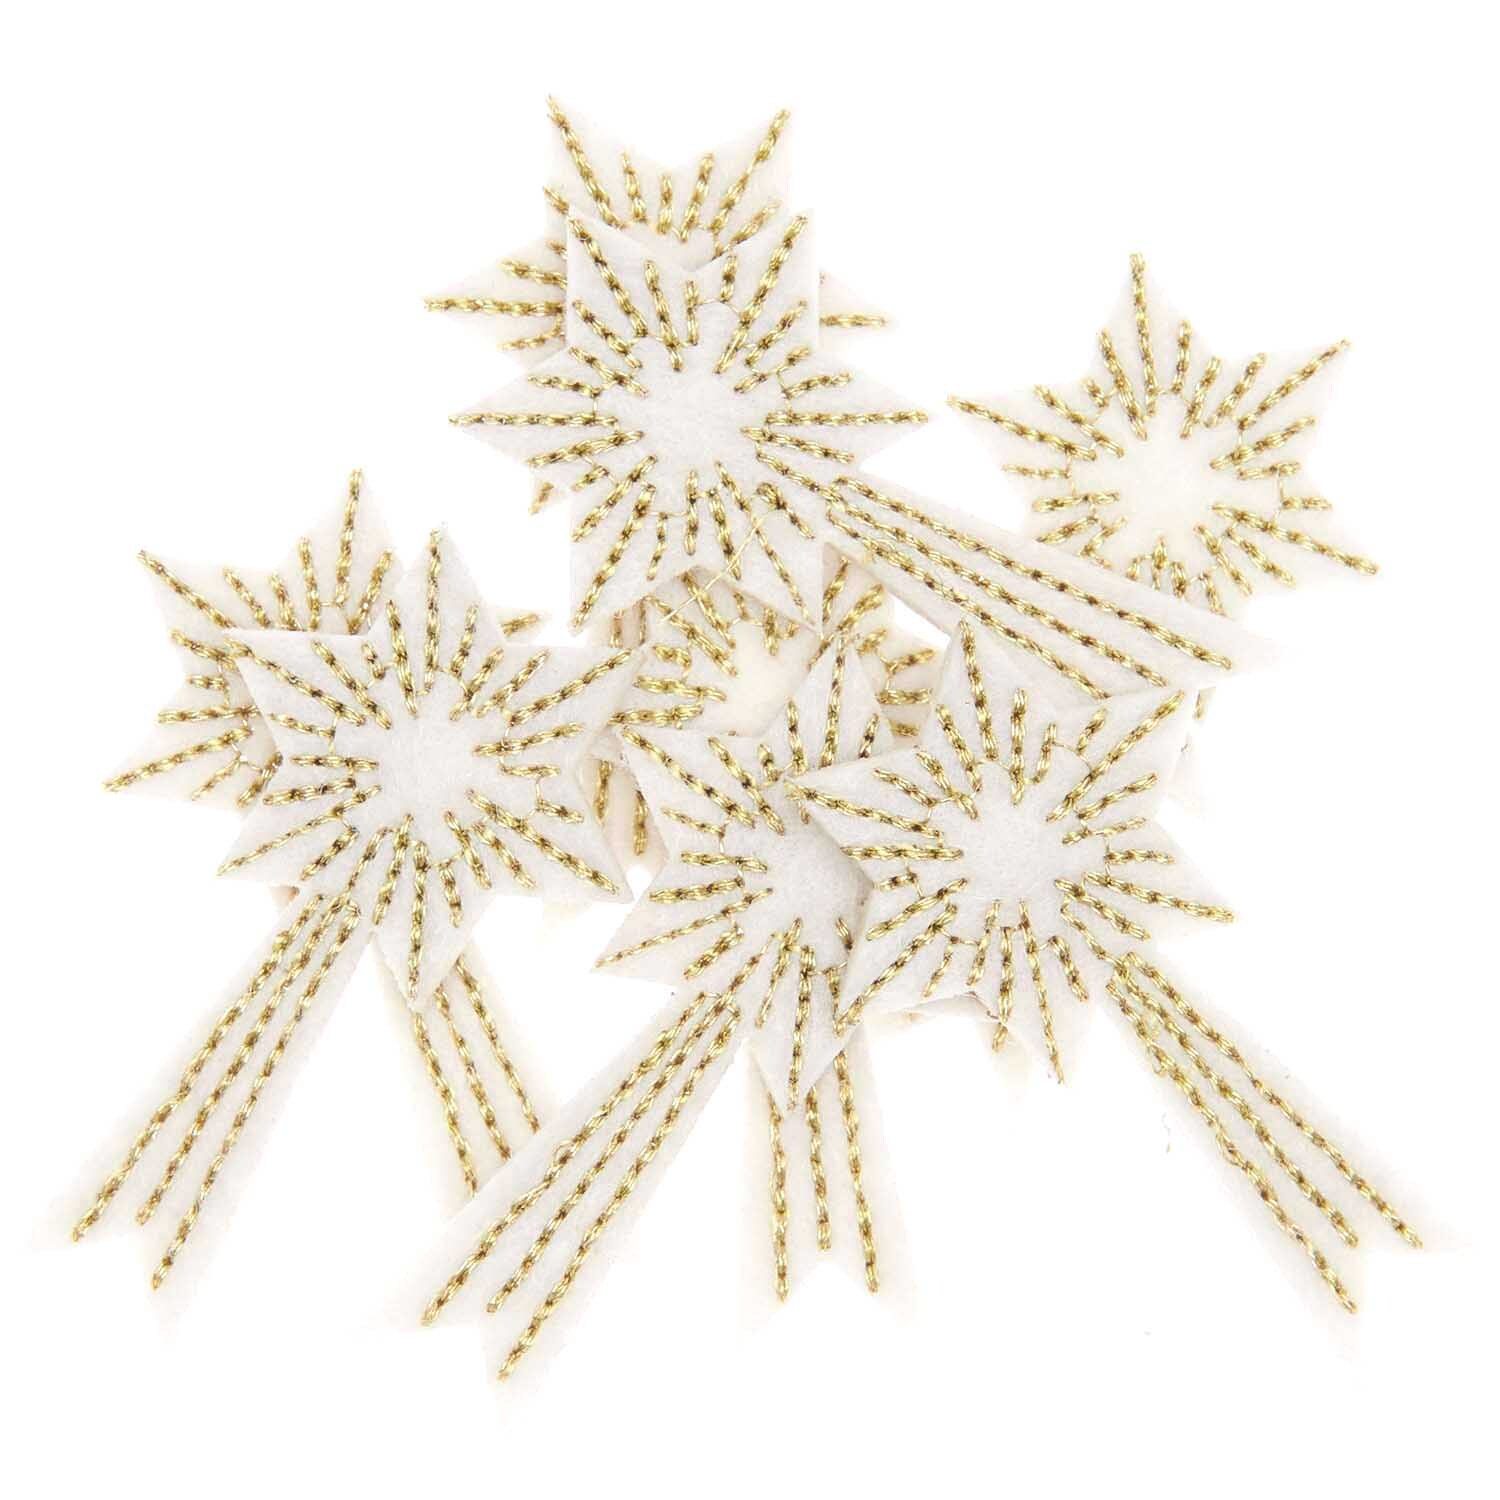 Filzstreu Sternschnuppen weiß-gold bestickt 5x3,7cm 8 Stück